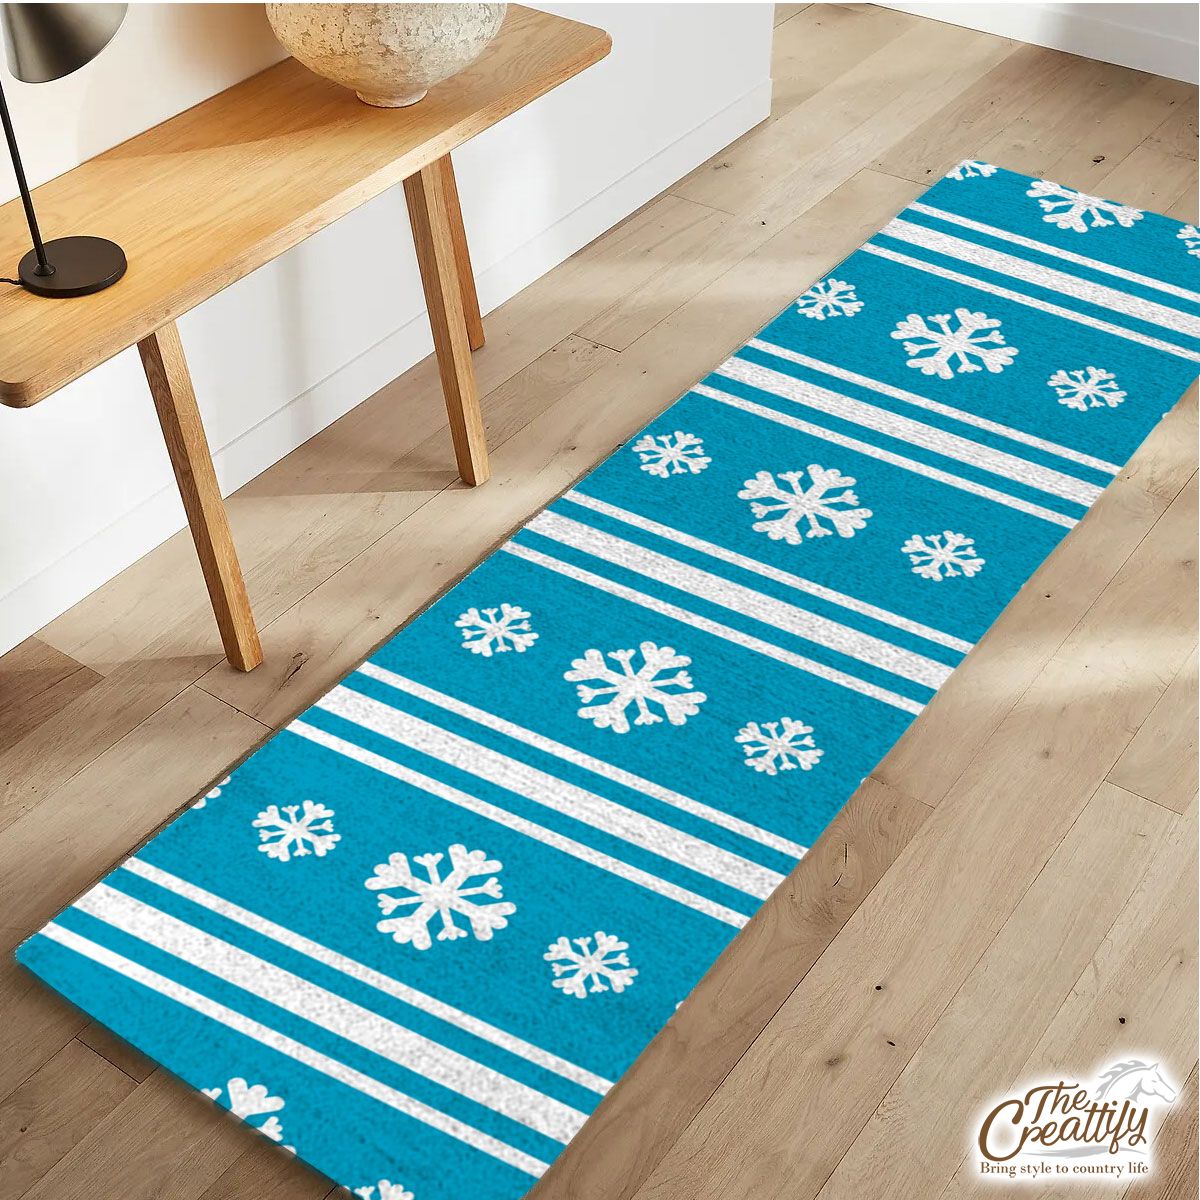 White And Blue Snowflake Christmas Runner Carpet